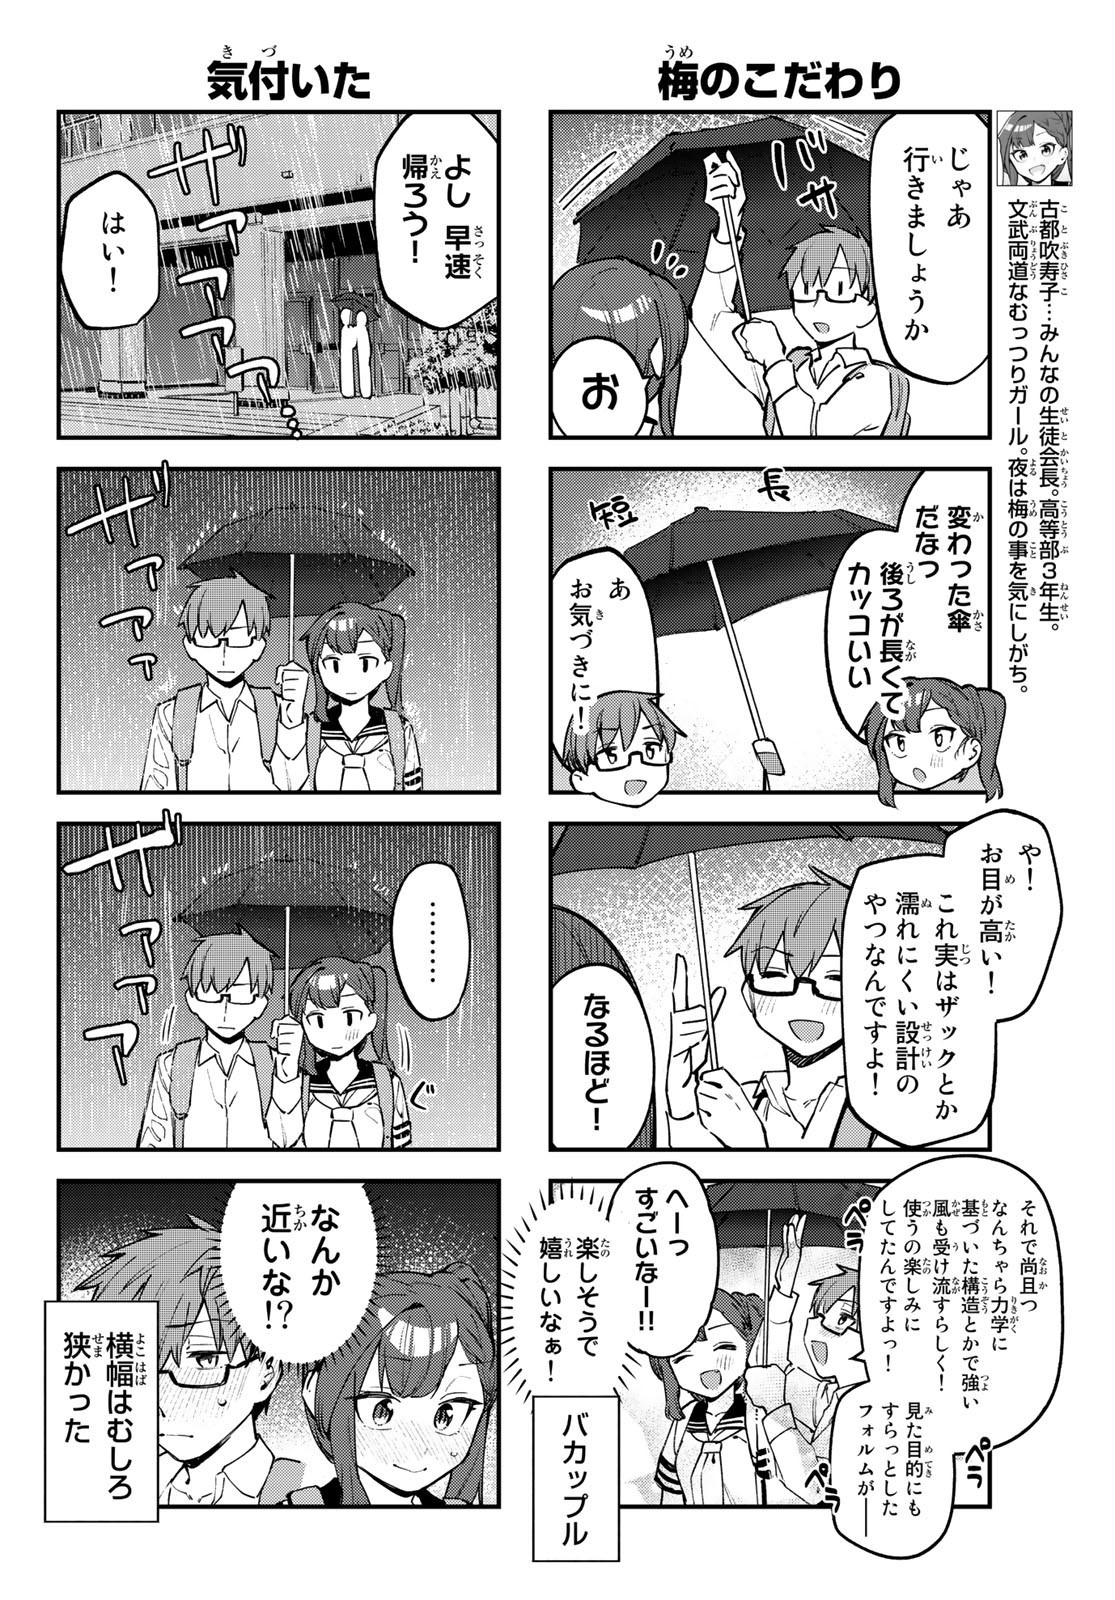 Seitokai ni mo Ana wa Aru! - Chapter 022 - Page 4